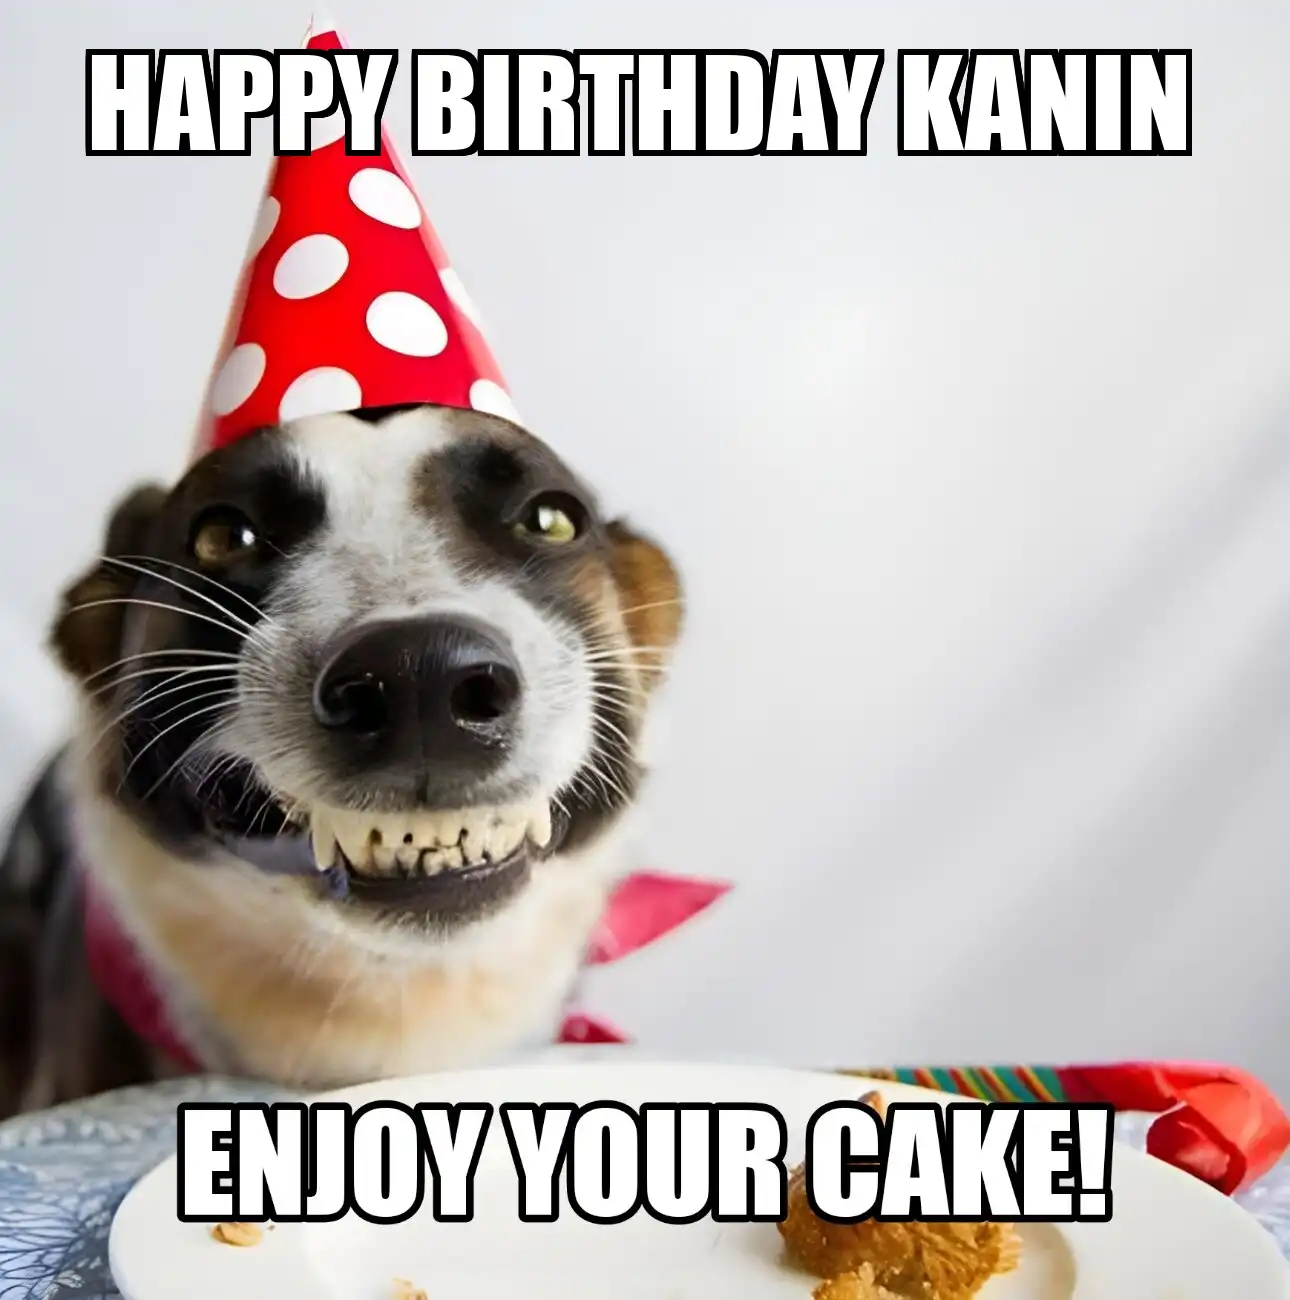 Happy Birthday Kanin Enjoy Your Cake Dog Meme